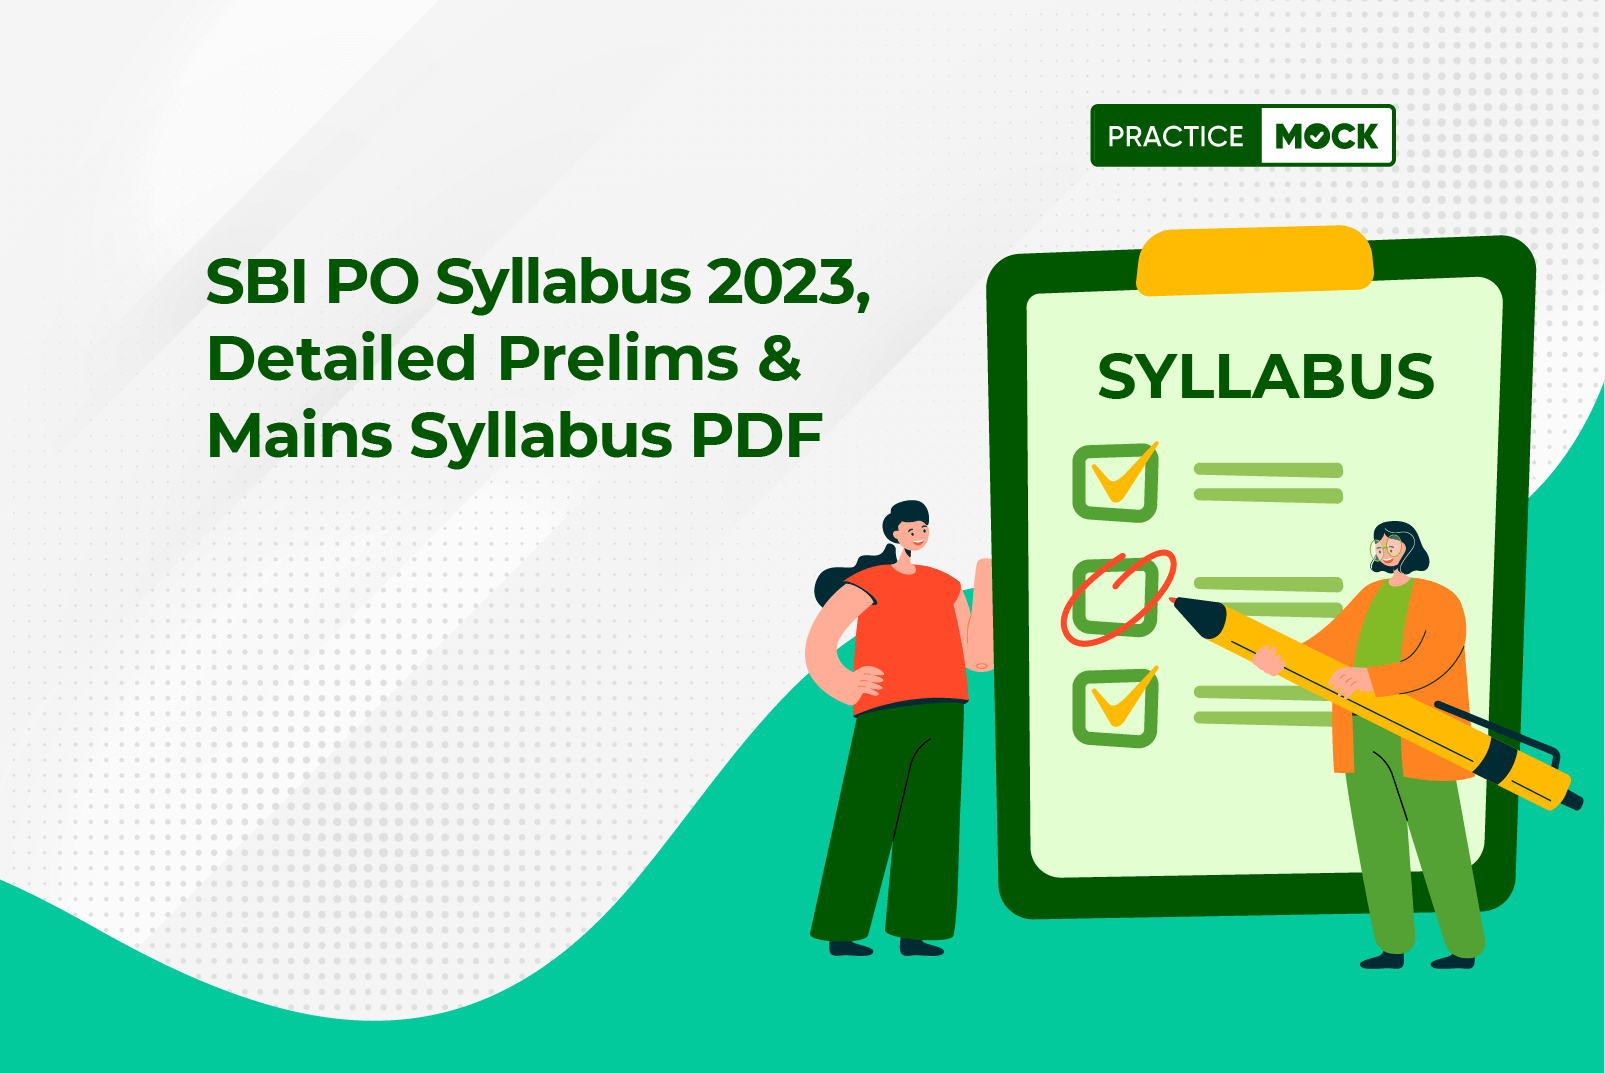 SBI PO Syllabus 2023, Detailed Prelims & Mains Syllabus PDF